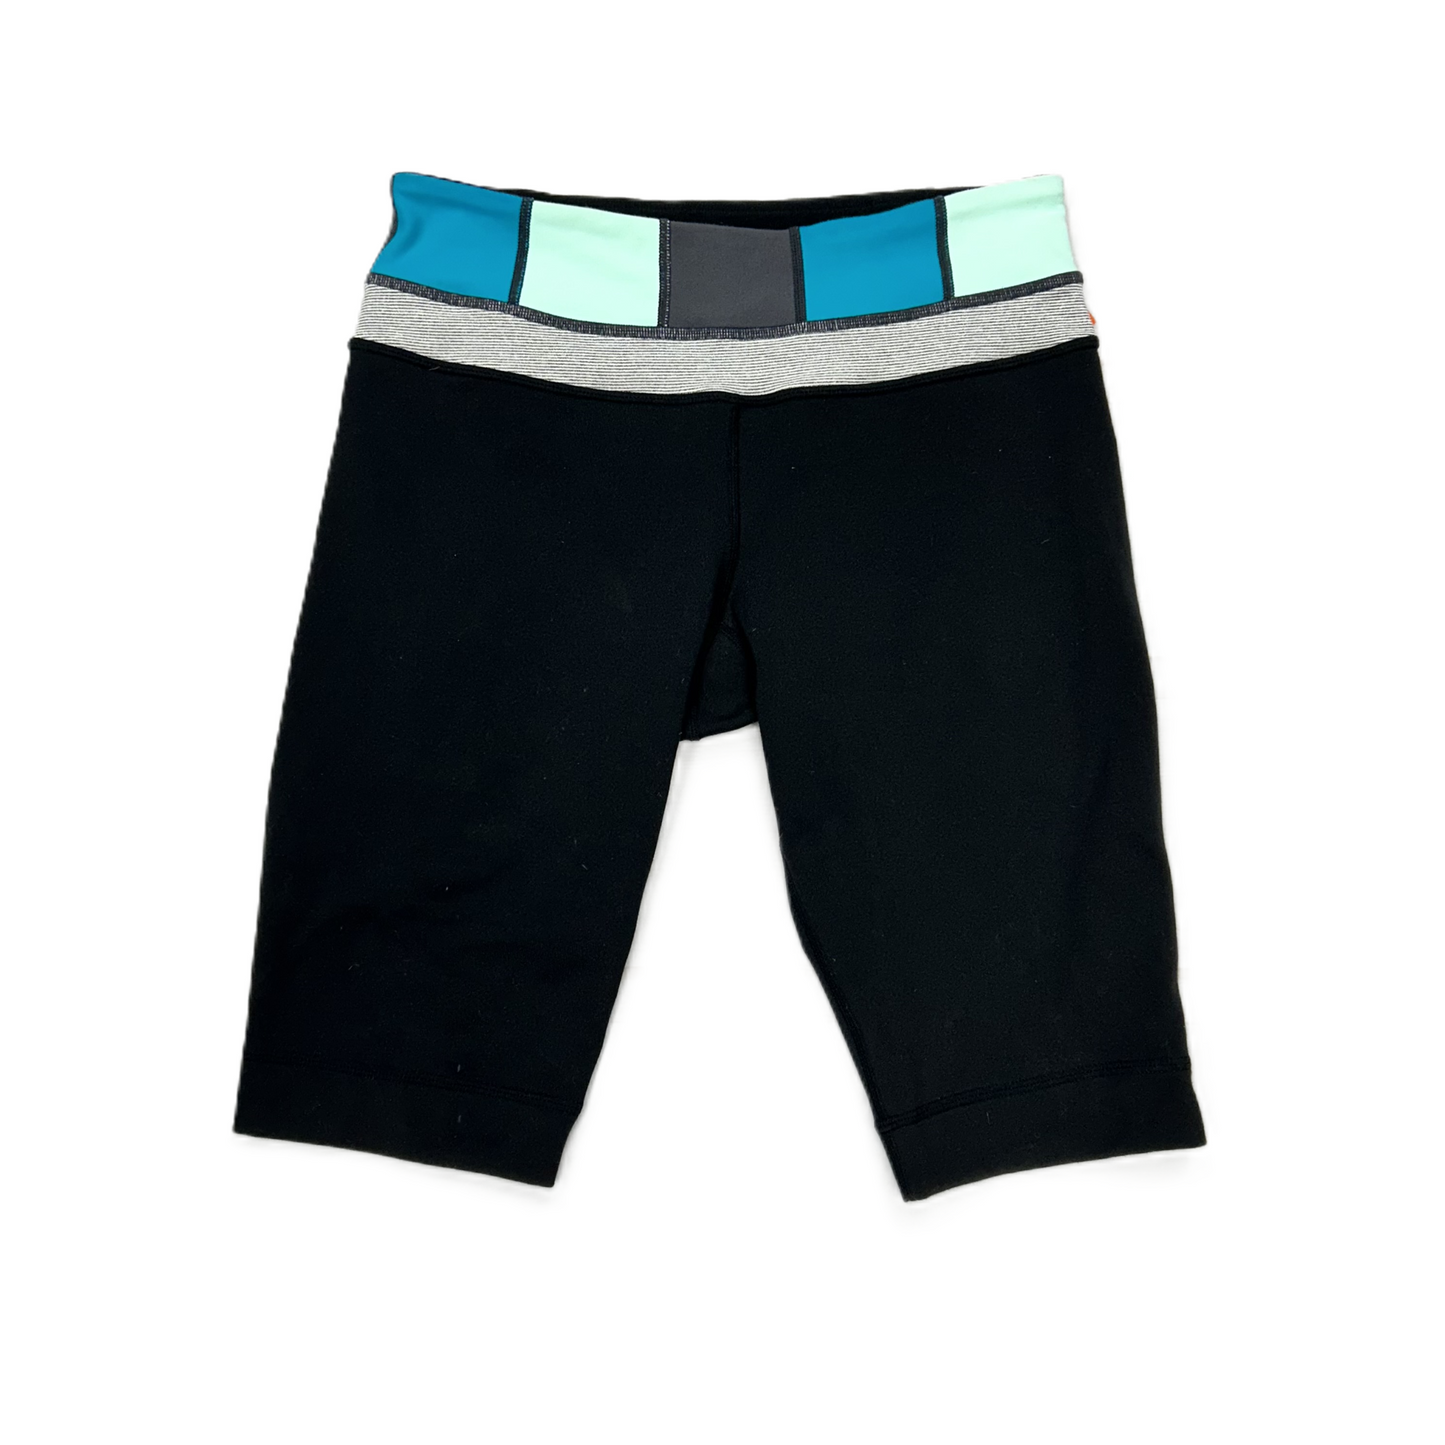 Black Athletic Shorts By Lululemon, Size: S